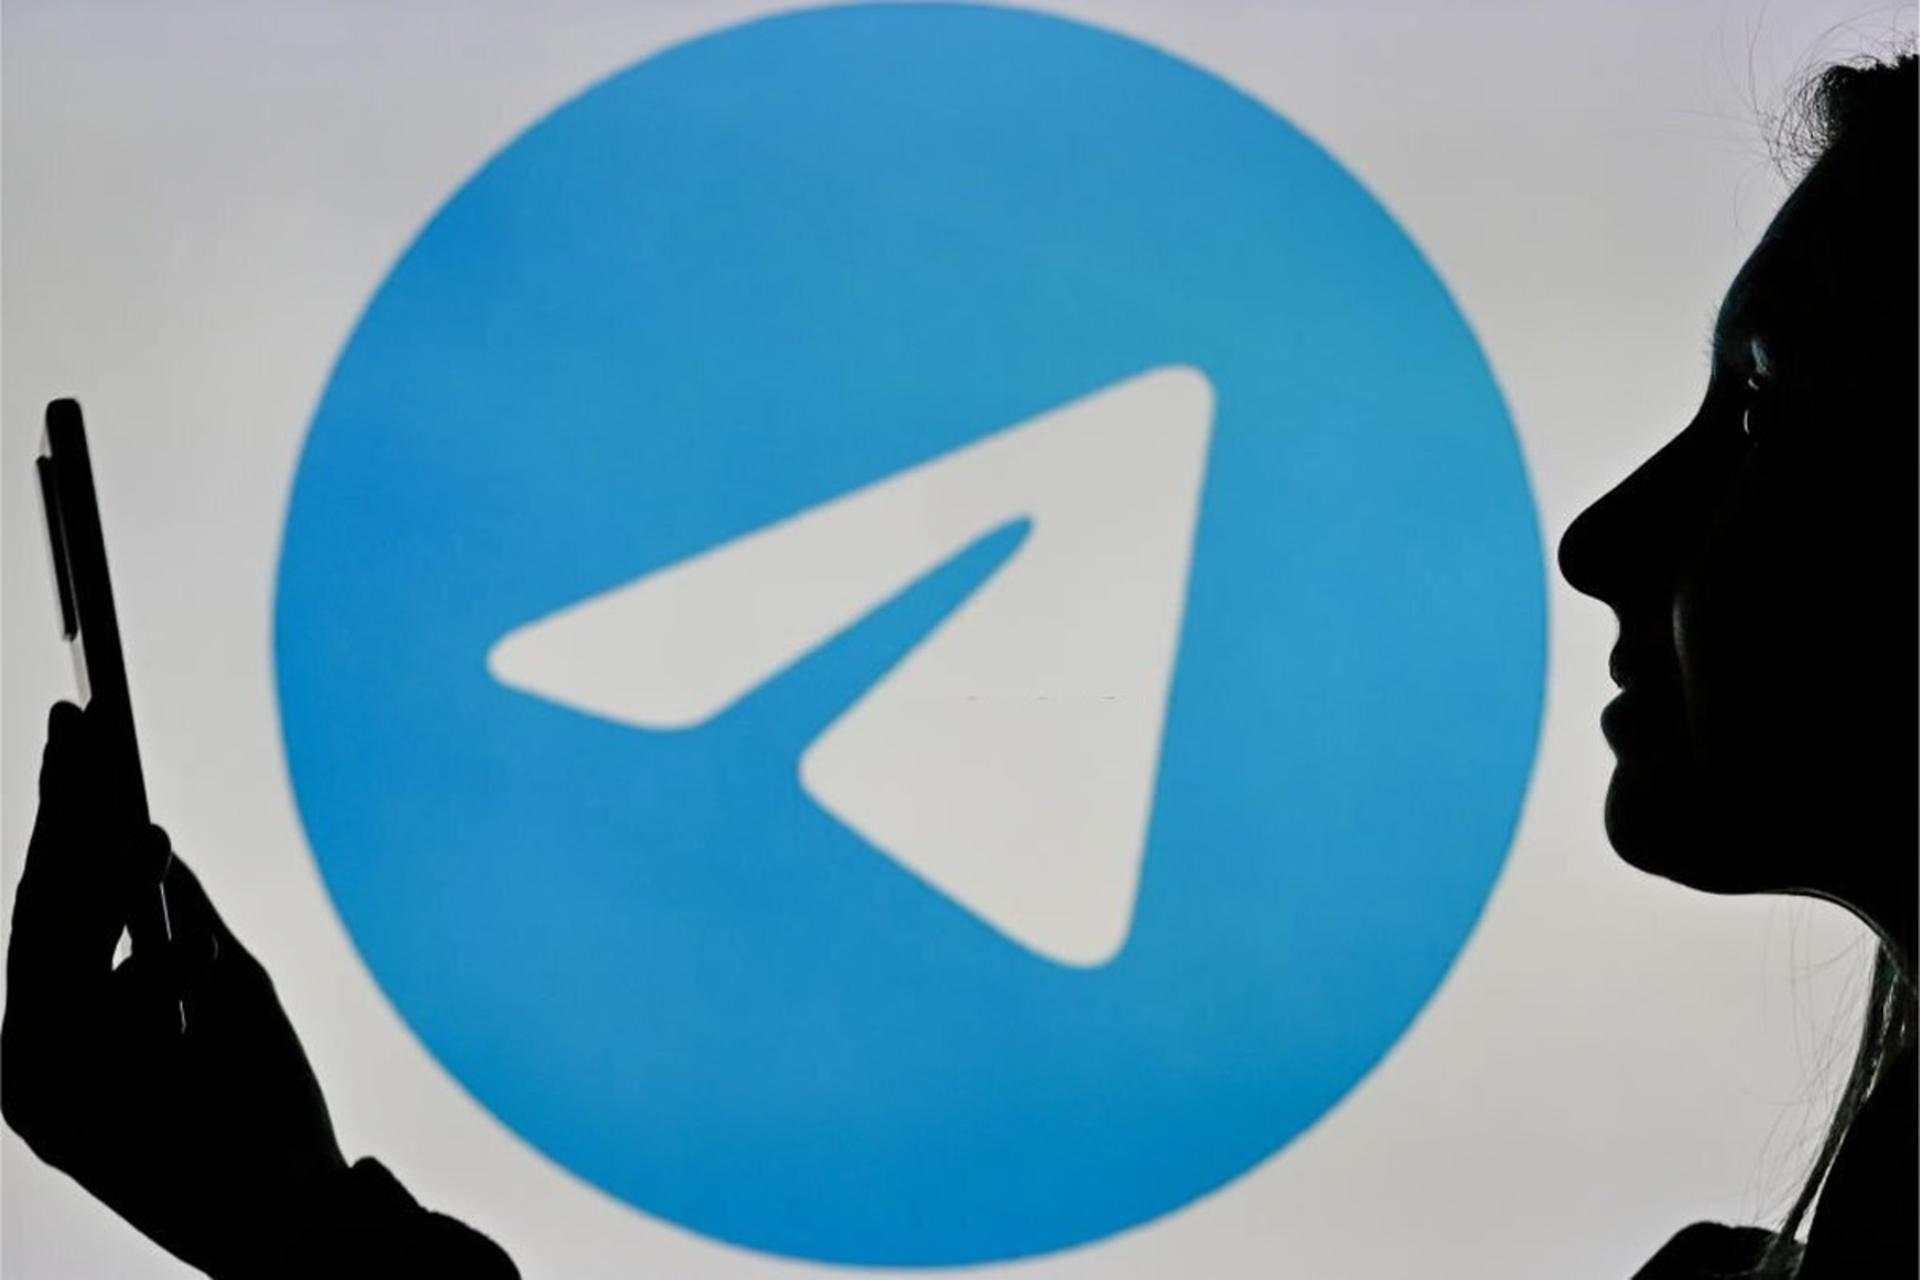 لوگو تلگرام / Telegram در پس زمینه یک زن با گوشی در دست